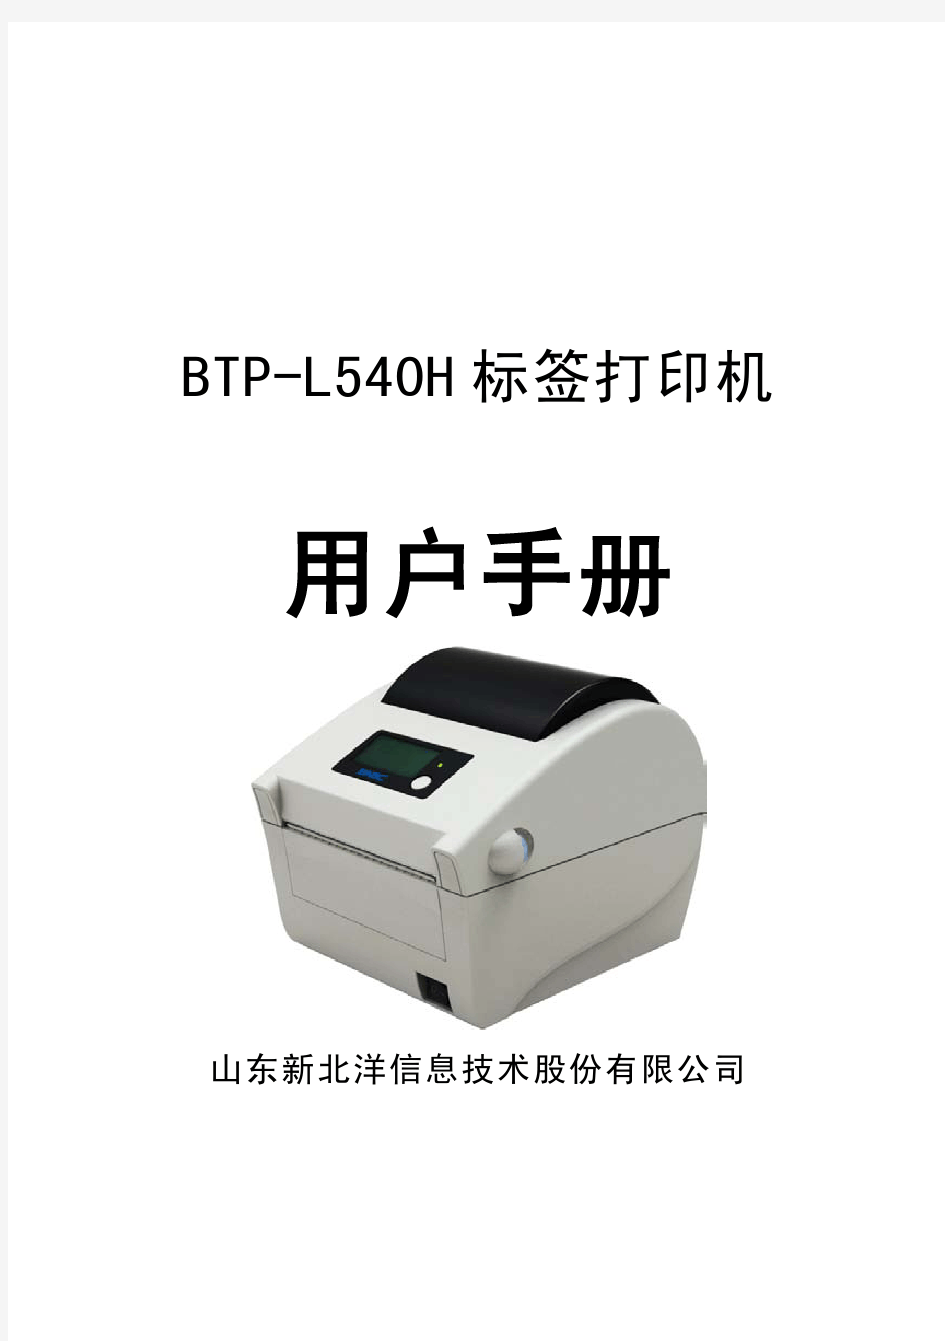 北洋打印机BTP-L540H(ARM9) 用户手册V1.0